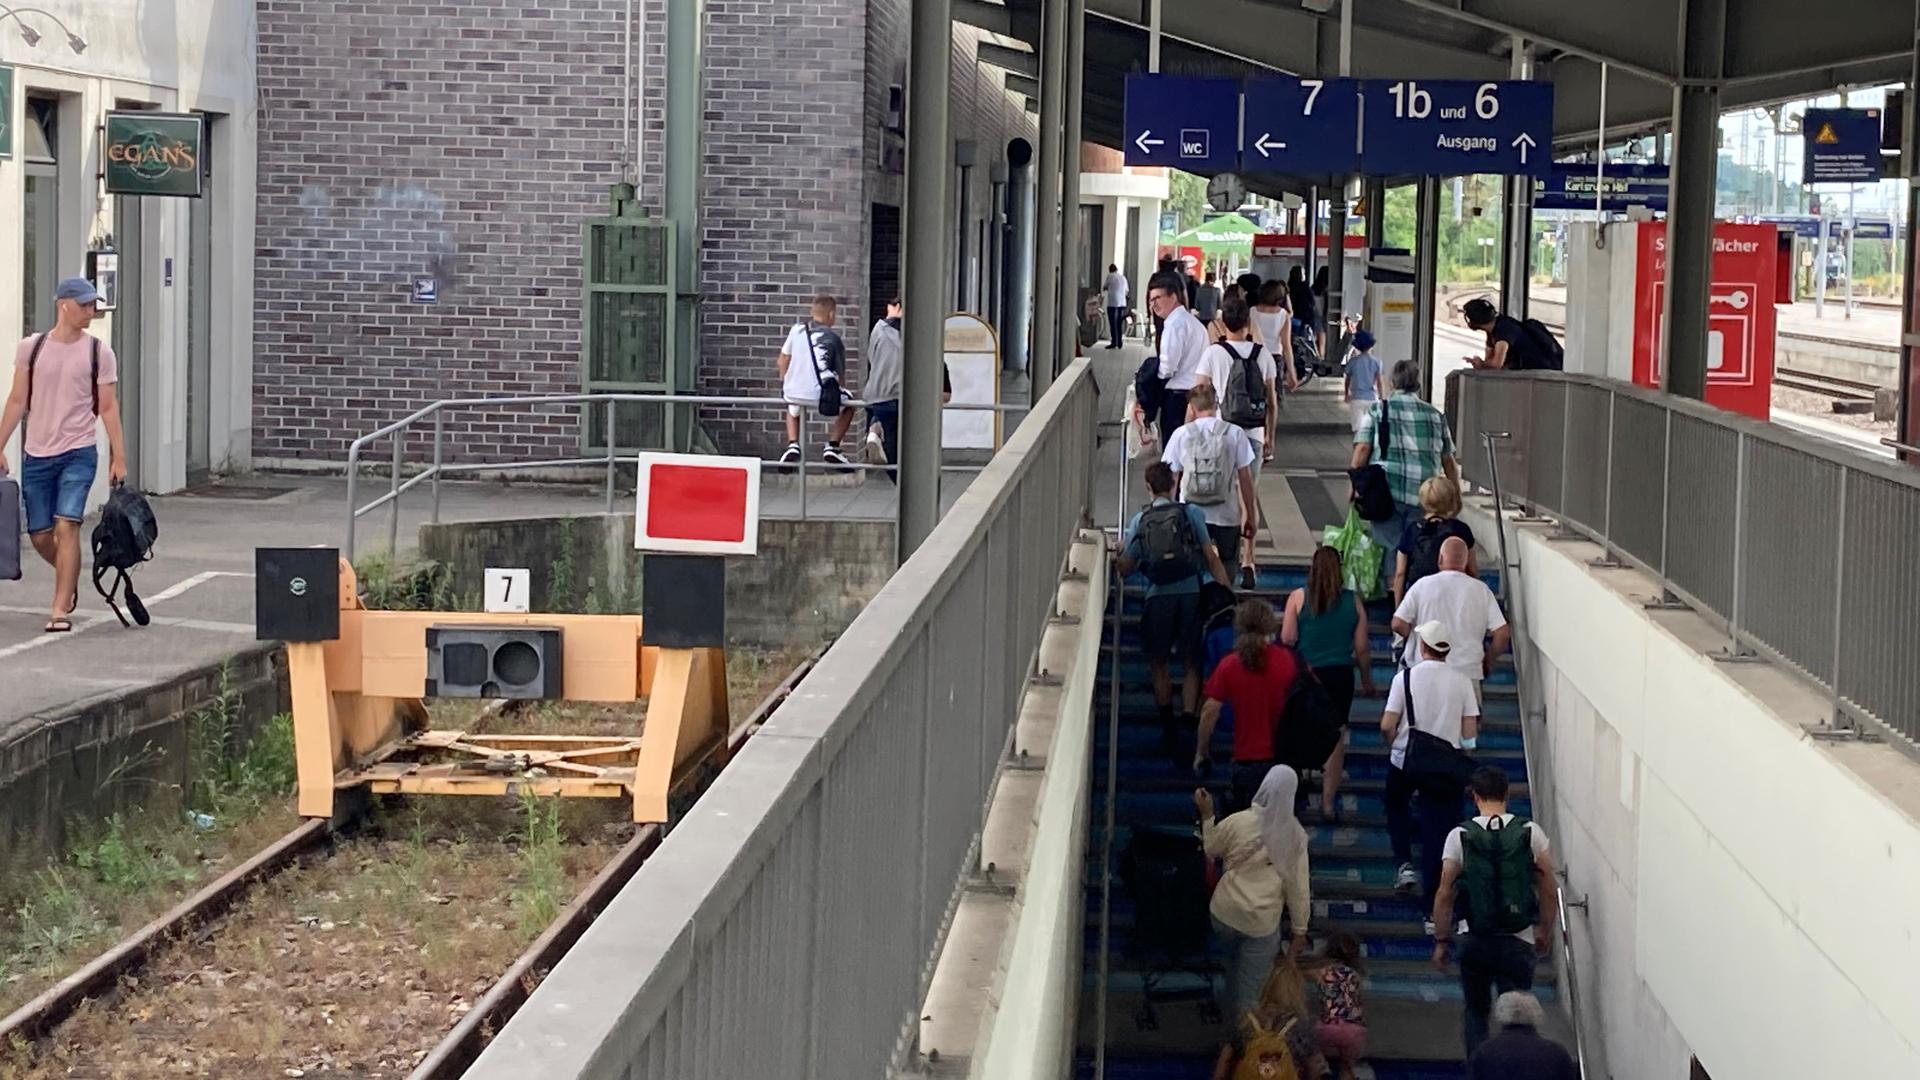 Das Stumpfgleis 7 links wird eingekürzt: Danach wird die Fläche aufgefüllt und ermöglicht so mehr Platz beim Zugang zu den Gleisen am Bruchsaler Bahnhof.